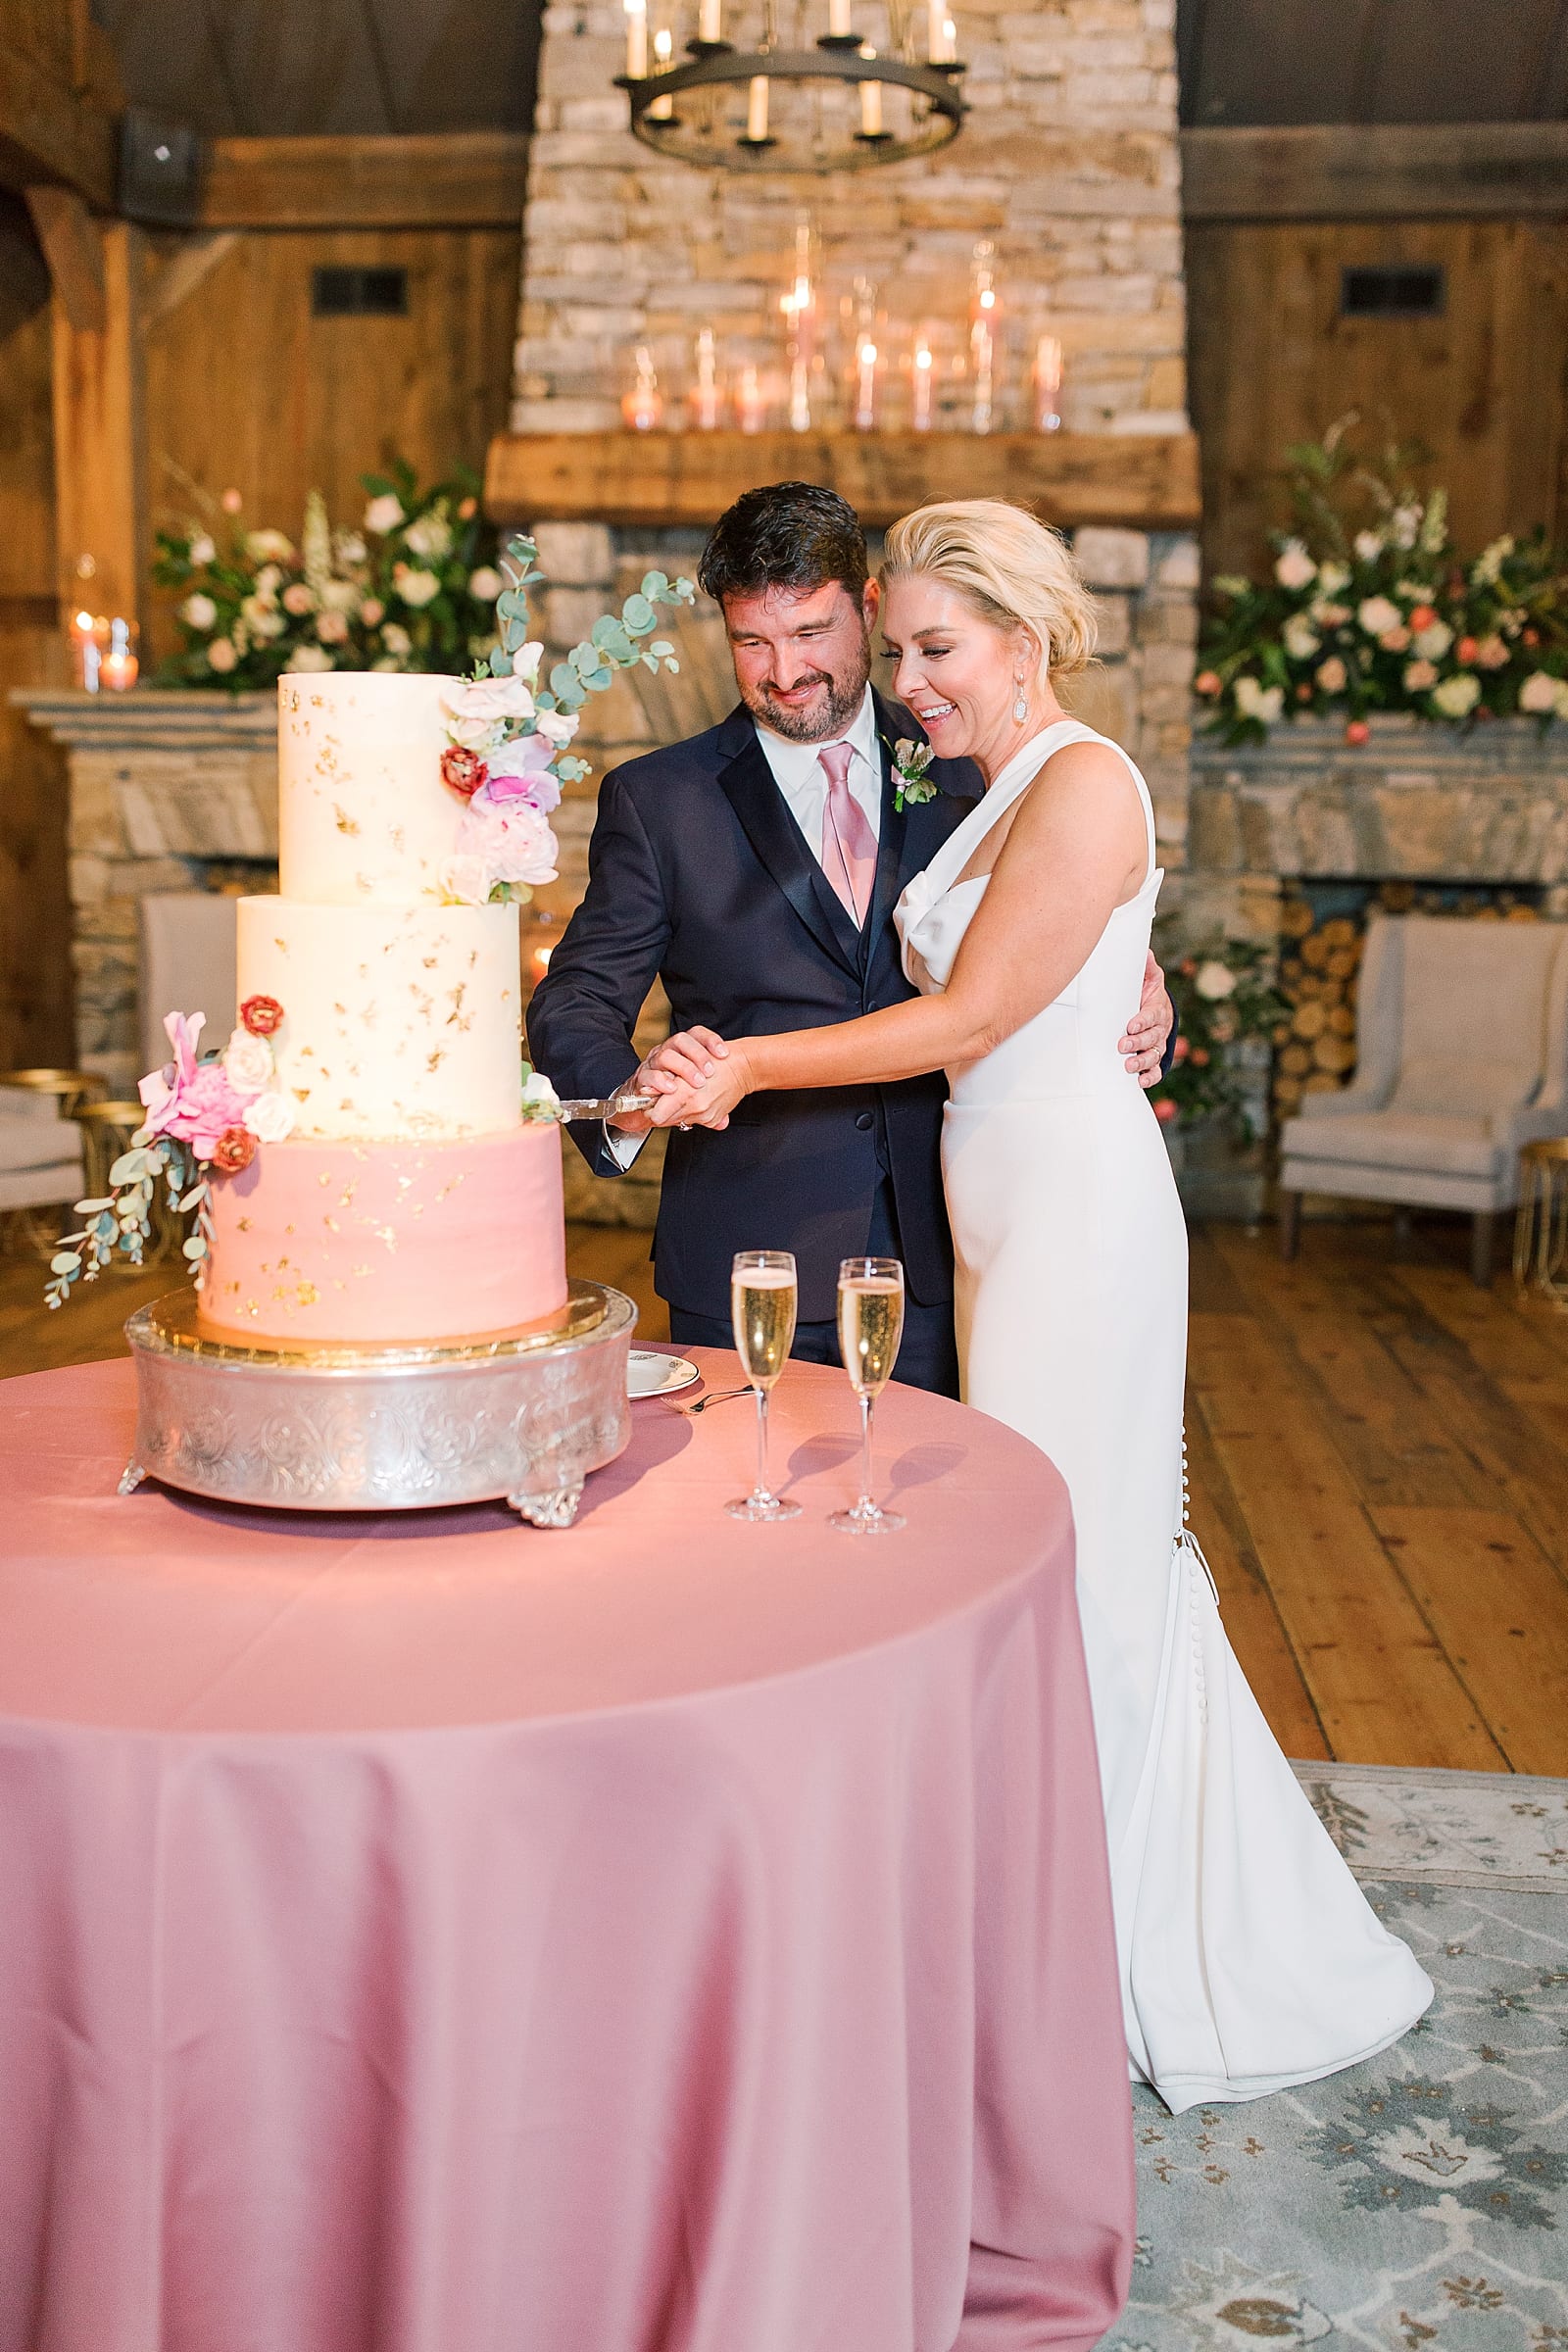 Old Edwards Inn Wedding Cake Cutting Photo